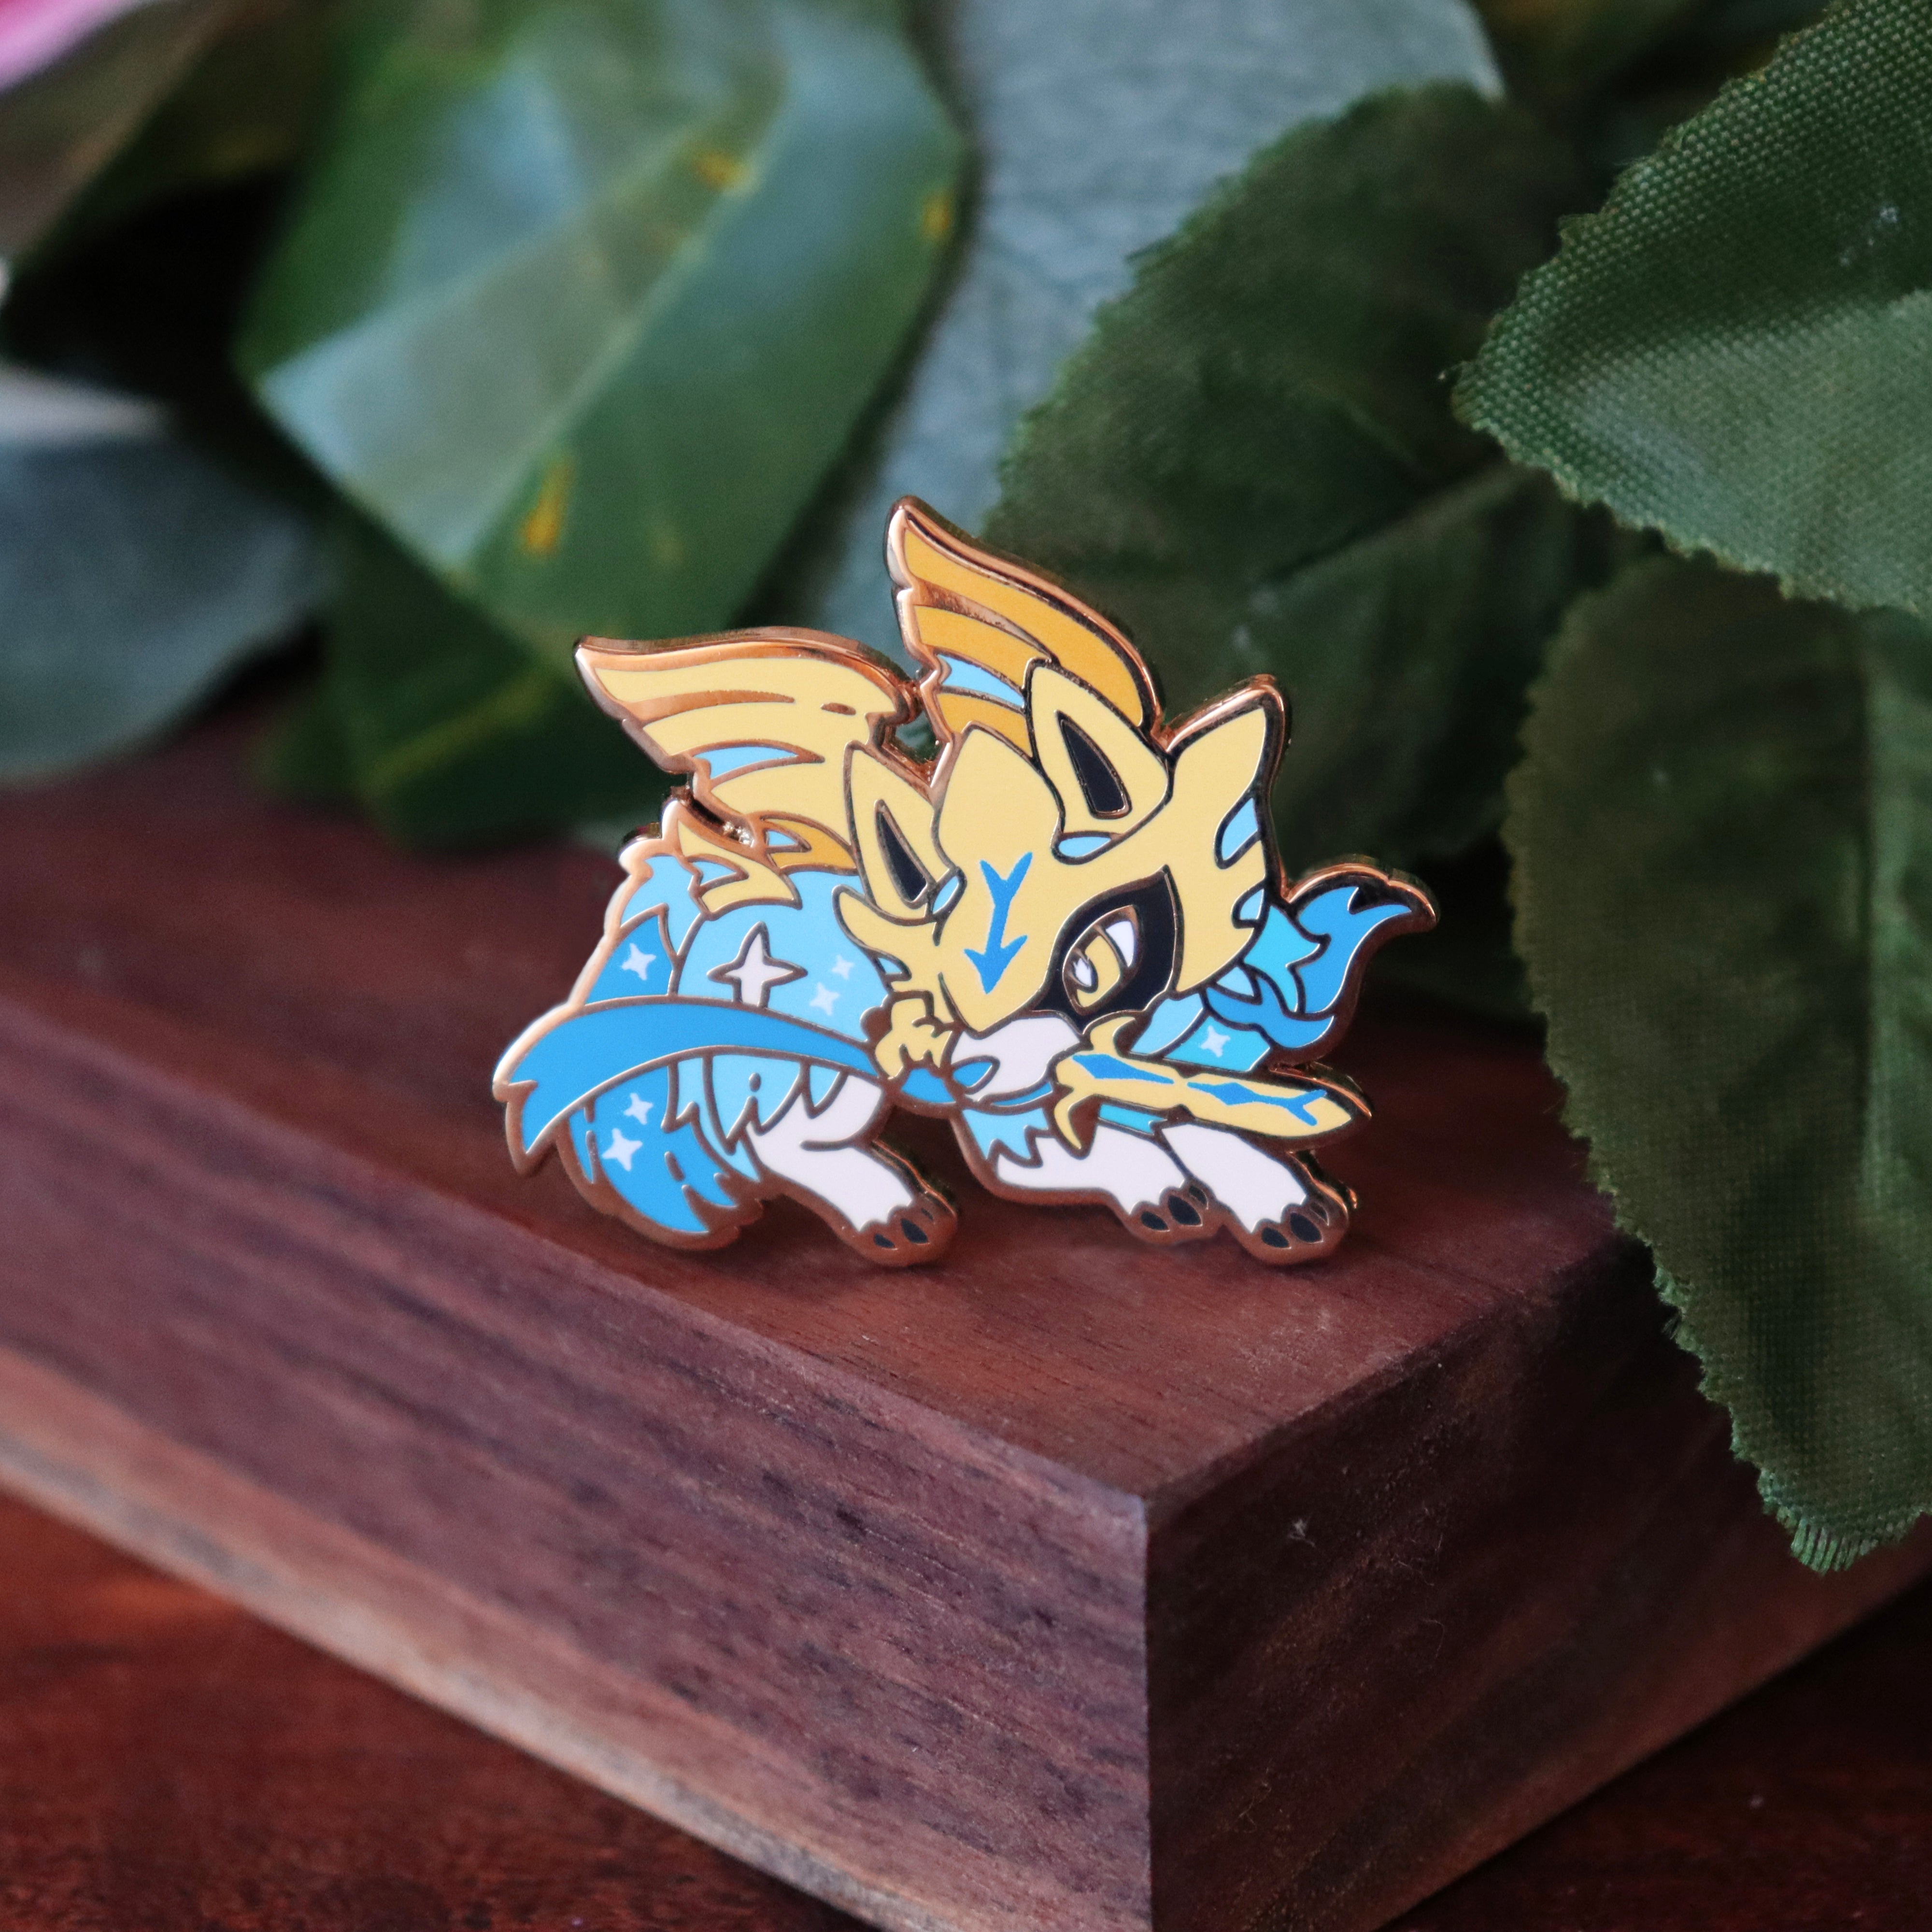 Pin on Shiny Pokémon